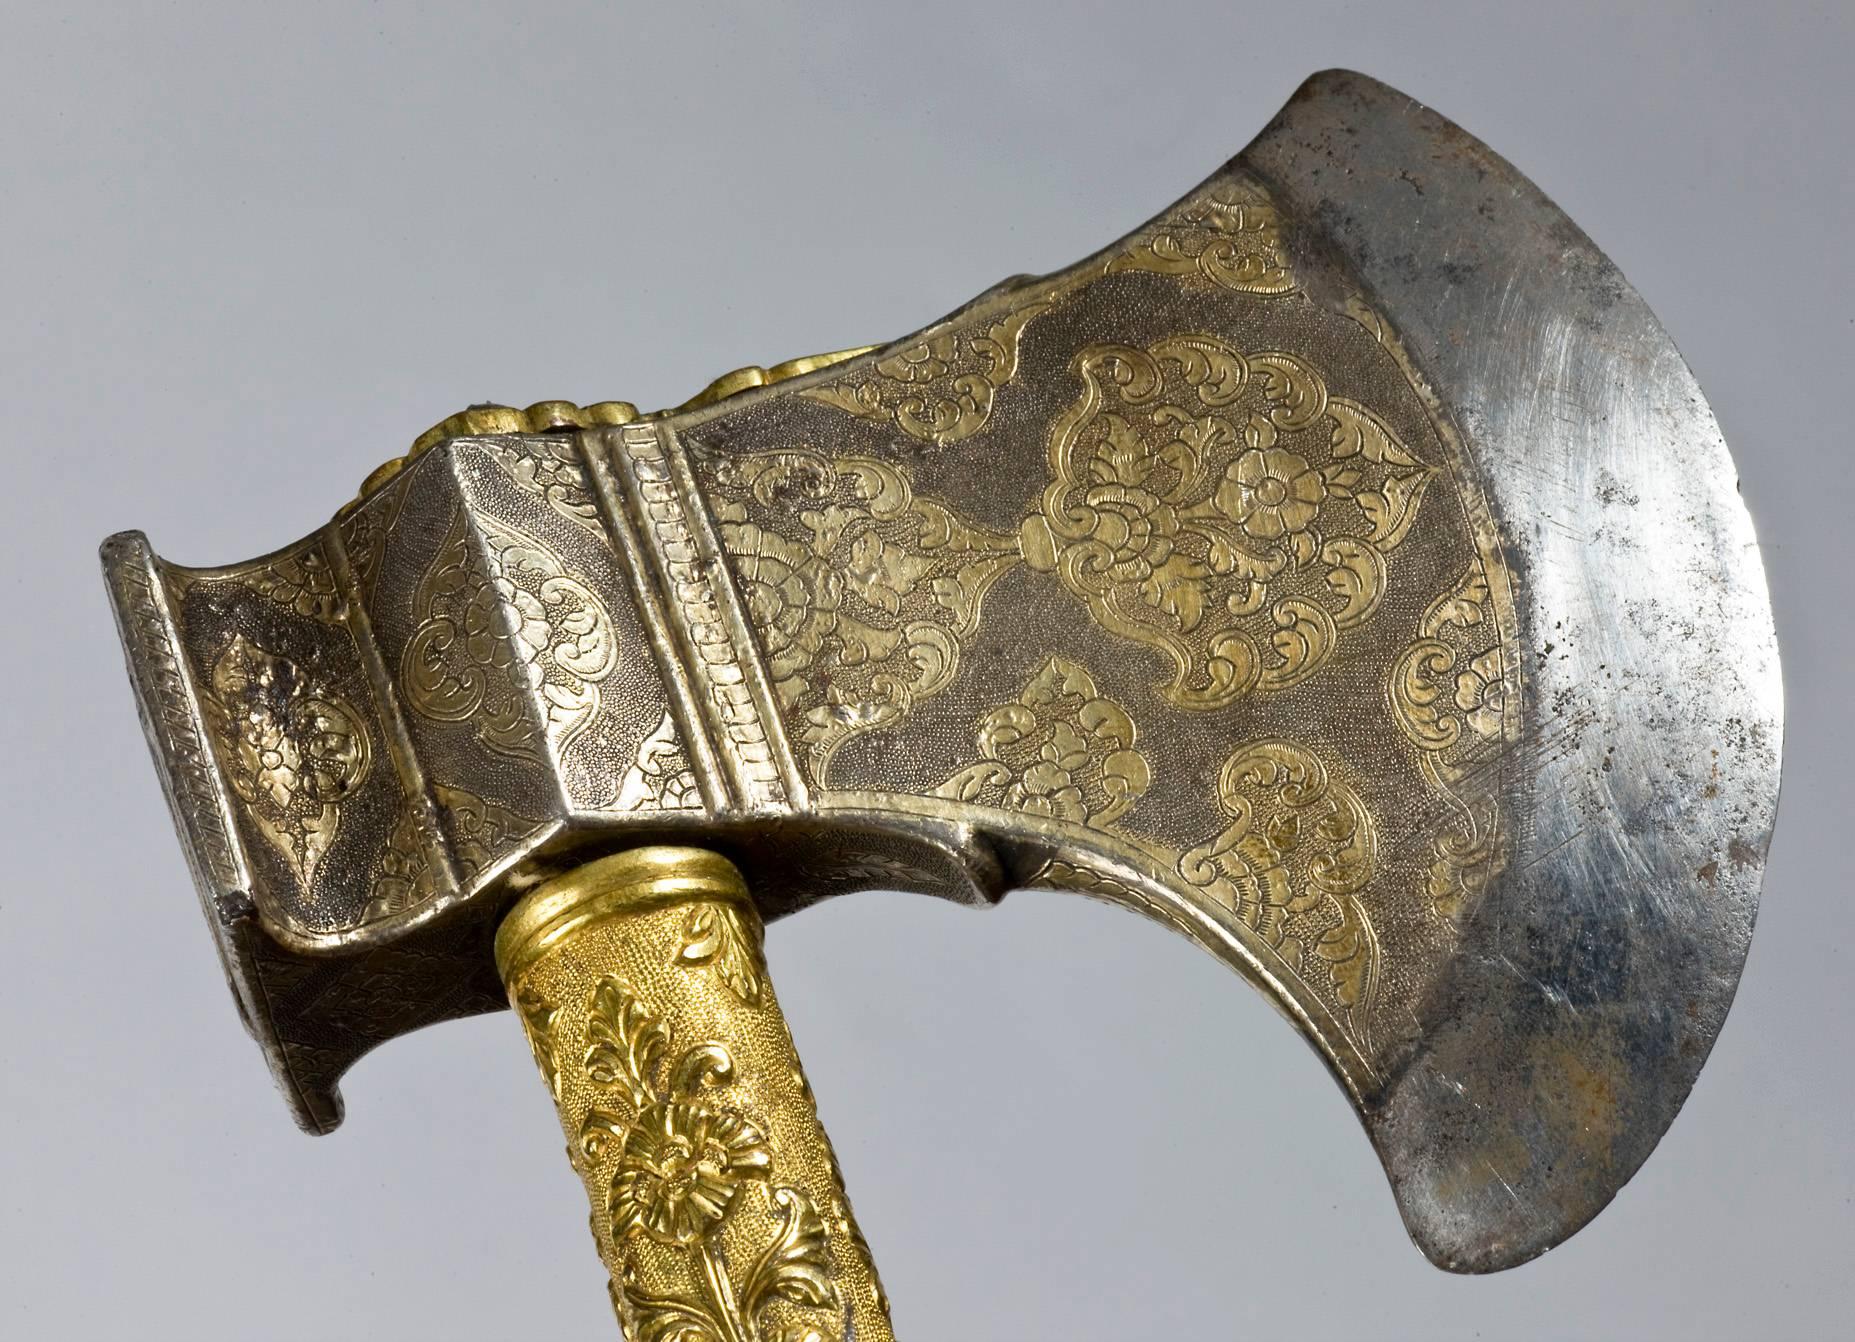 19th century axe